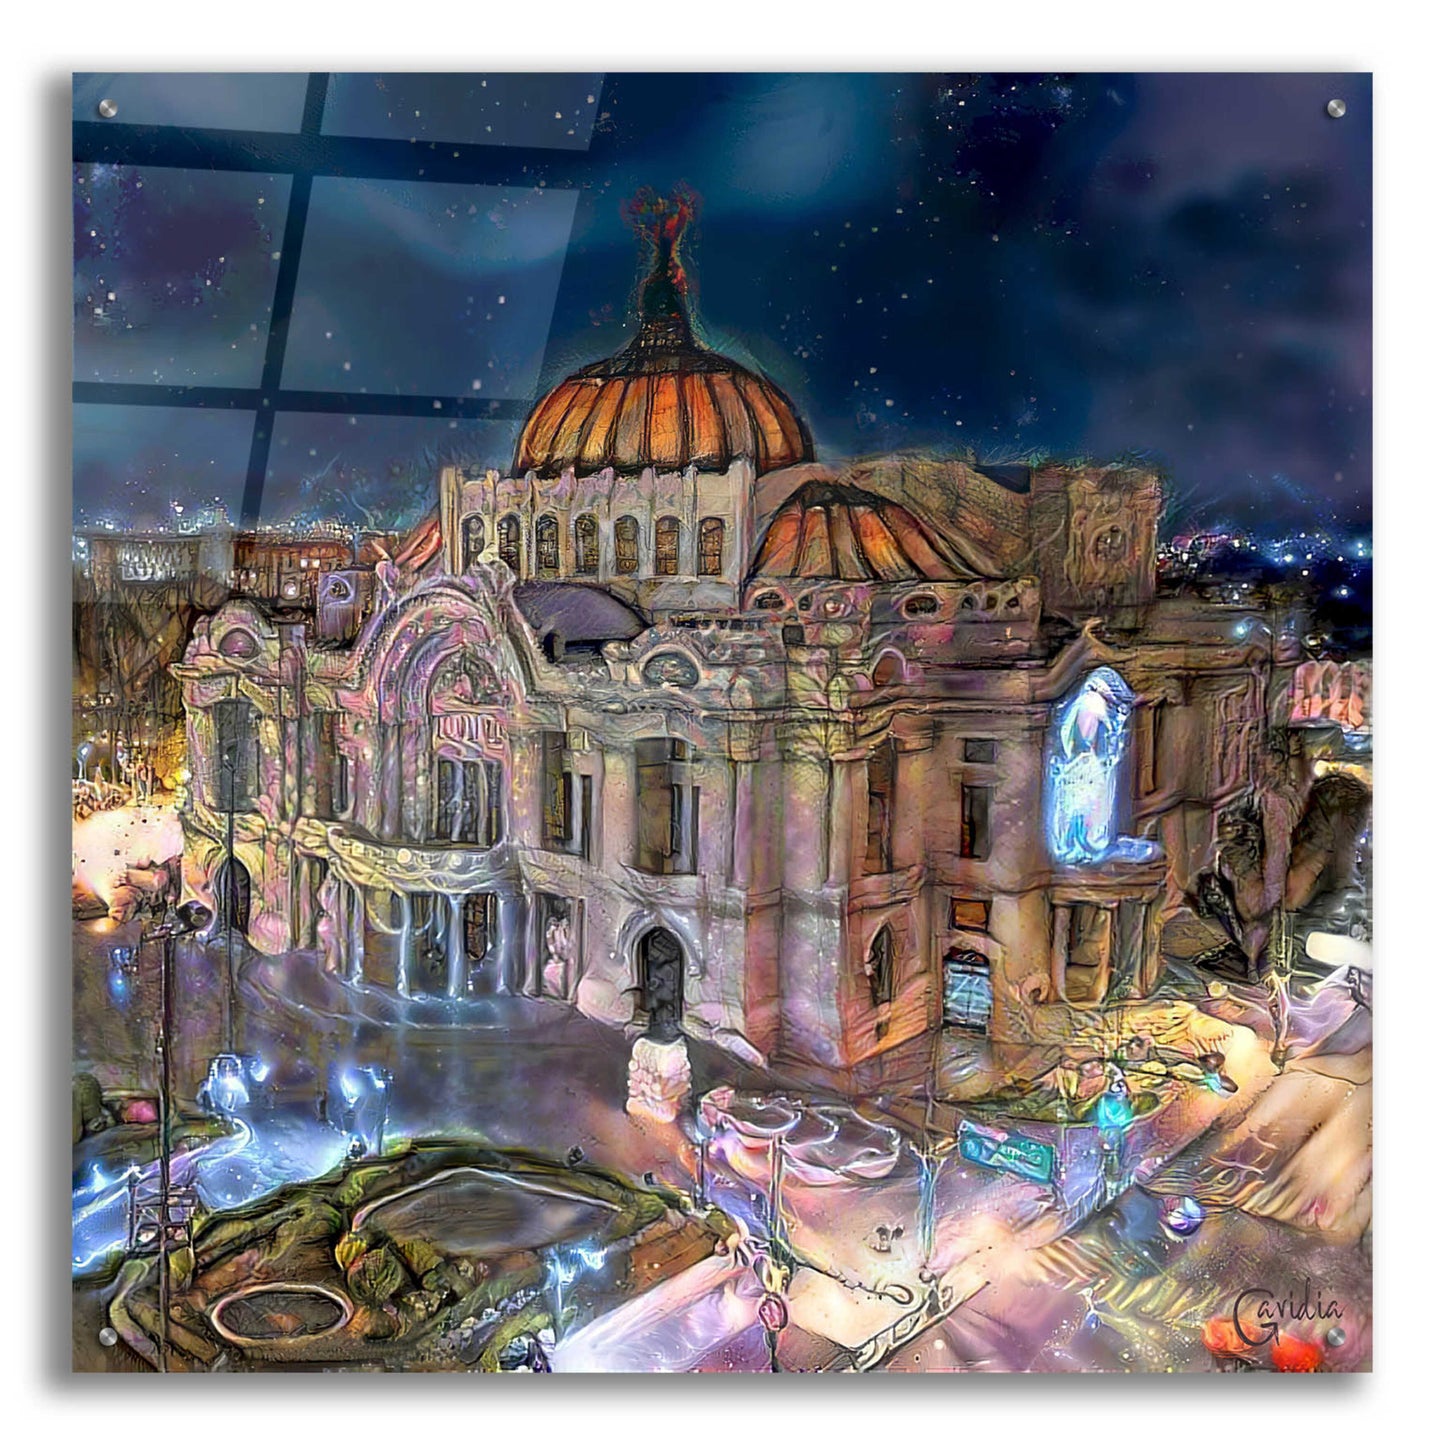 Epic Art 'Mexico City Palace of Fine Arts at night' by Pedro Gavidia, Acrylic Glass Wall Art,36x36